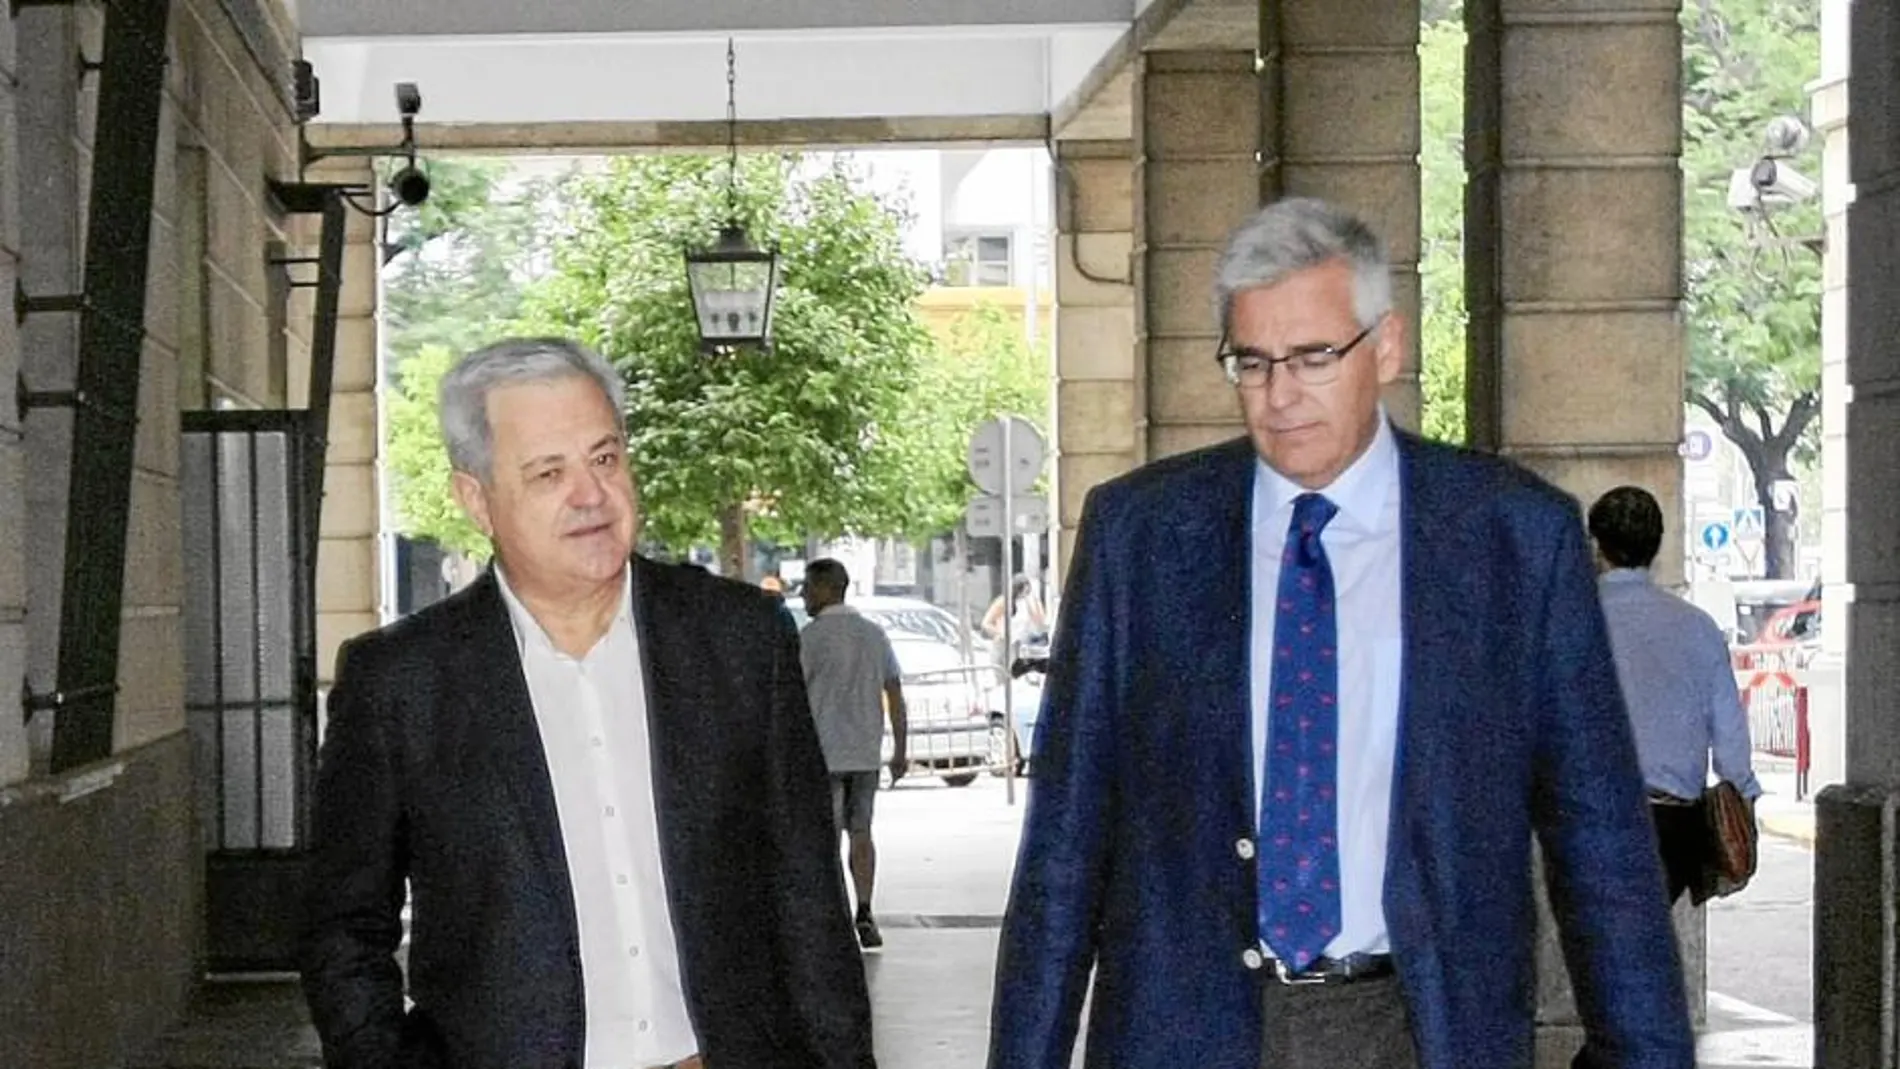 El ex consejero de Innovación Francisco Vallejo, junto a un letrado, en los juzgados de Sevilla